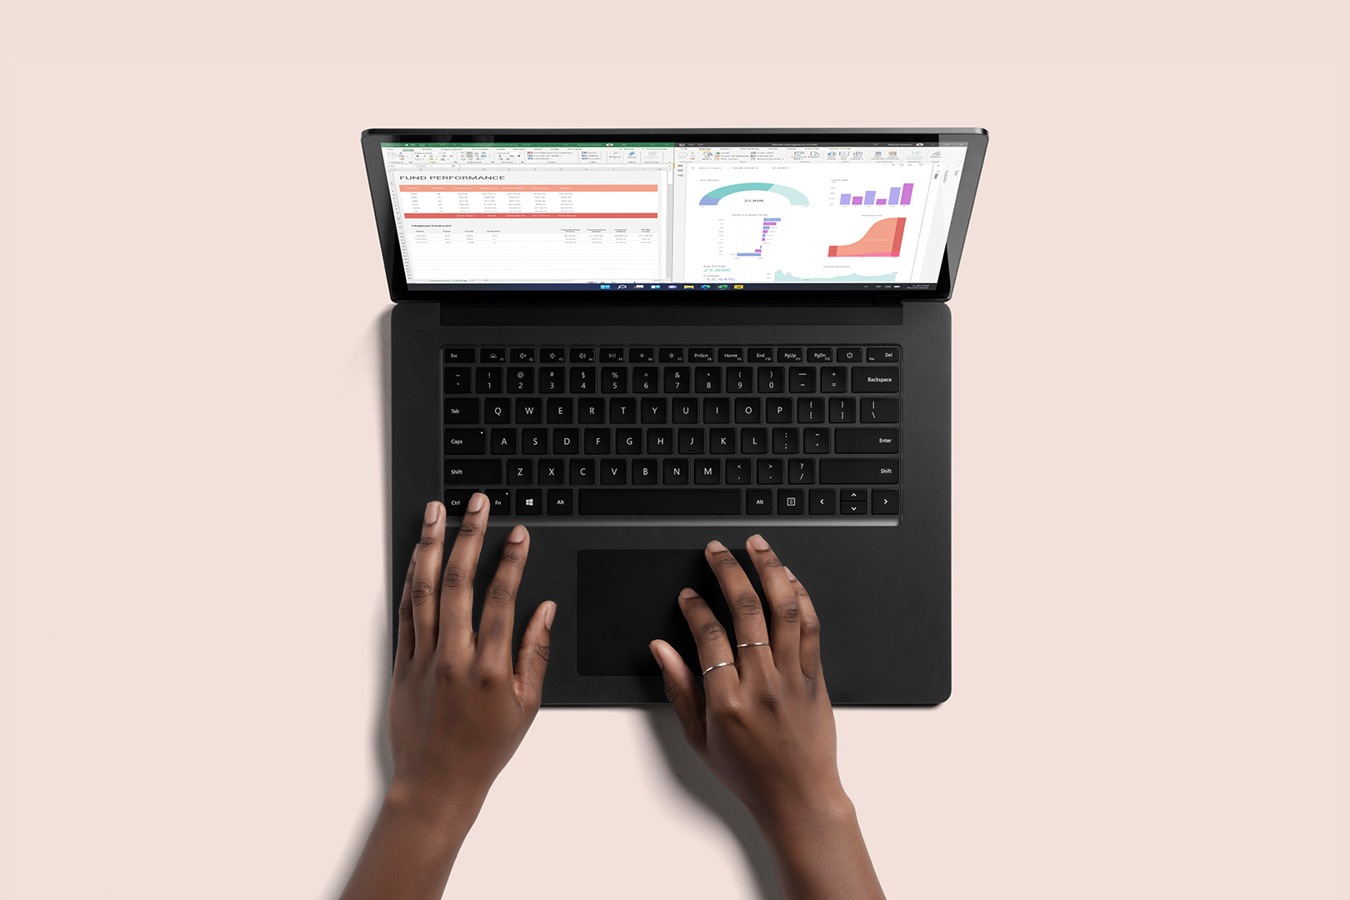 Surface Laptop 4(블랙) 하향식 보기. 키보드로 입력 중인 두 손이 보입니다.
